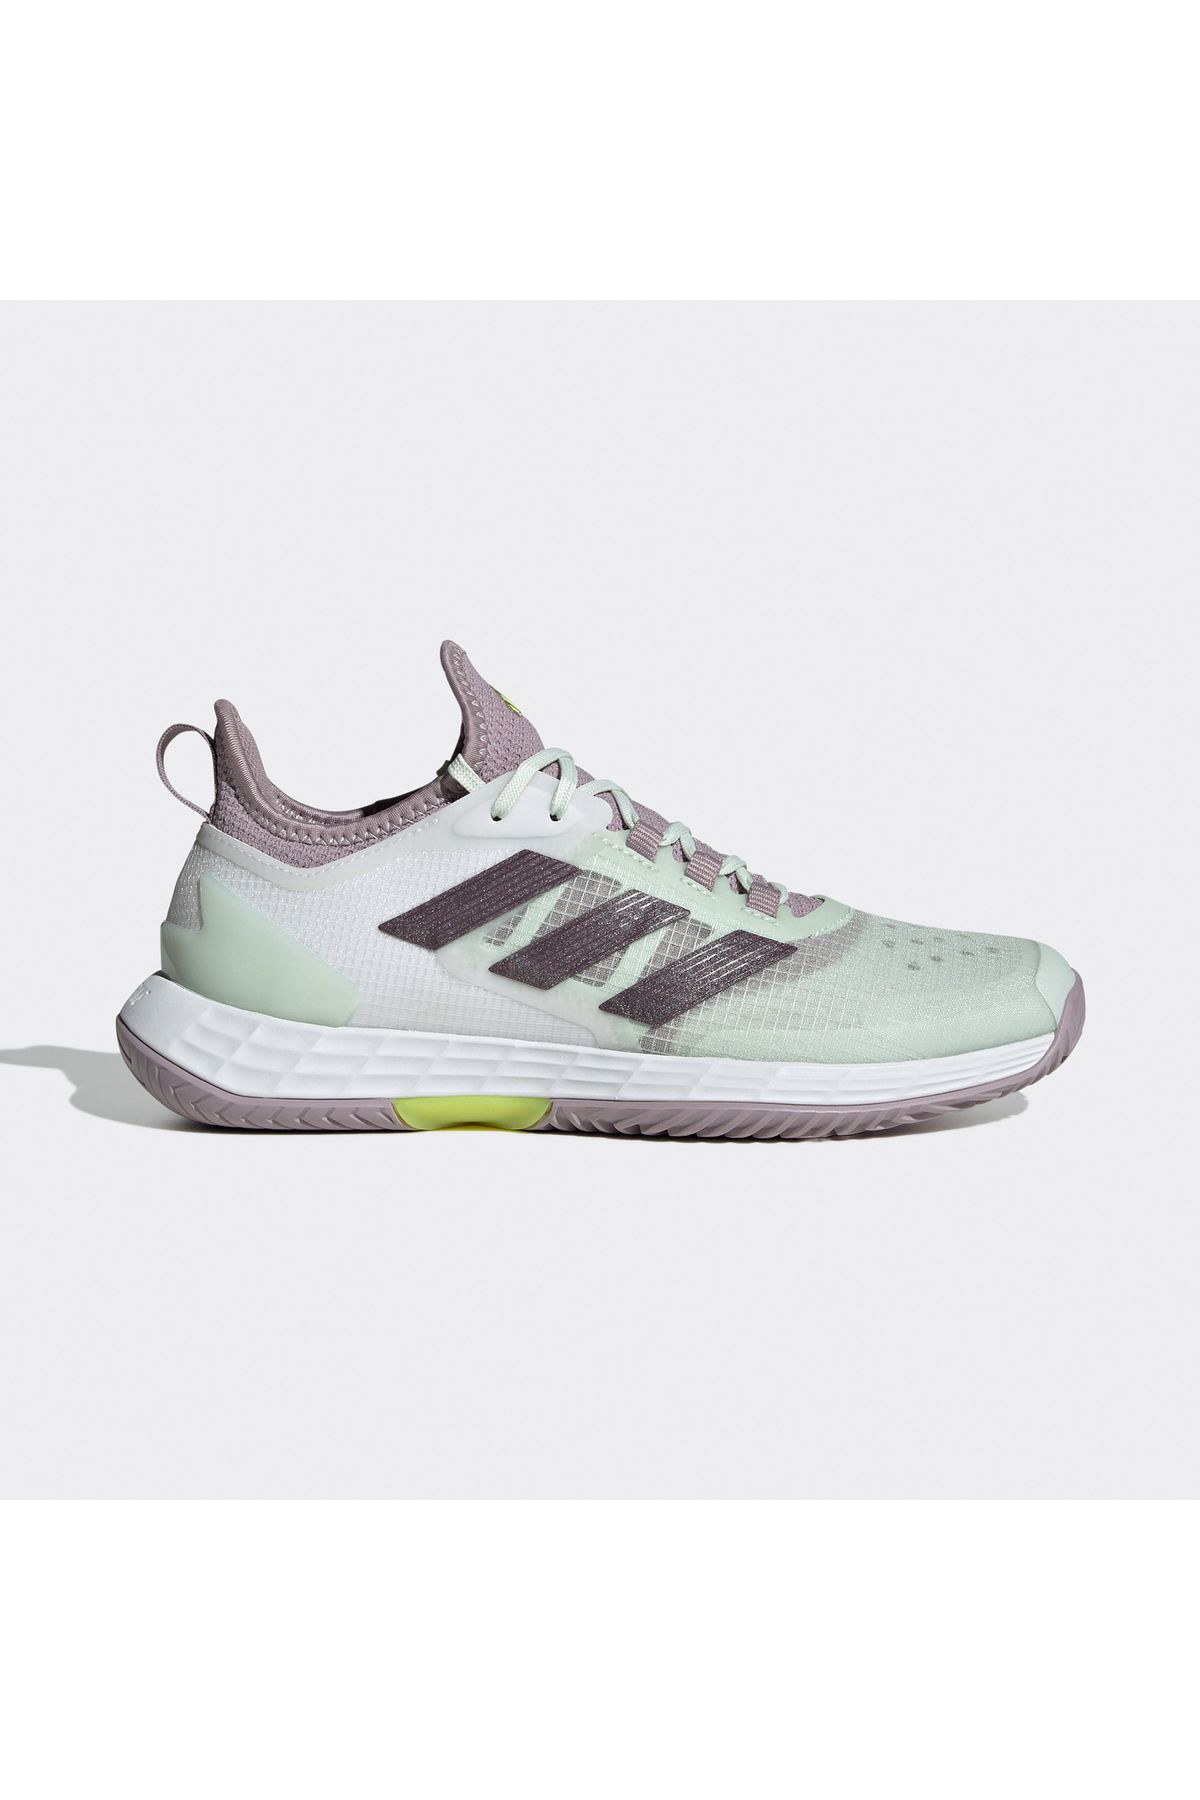 adidas Adizero Ubersonic 4.1 Kadın Yeşil Tenis Ayakkabısı